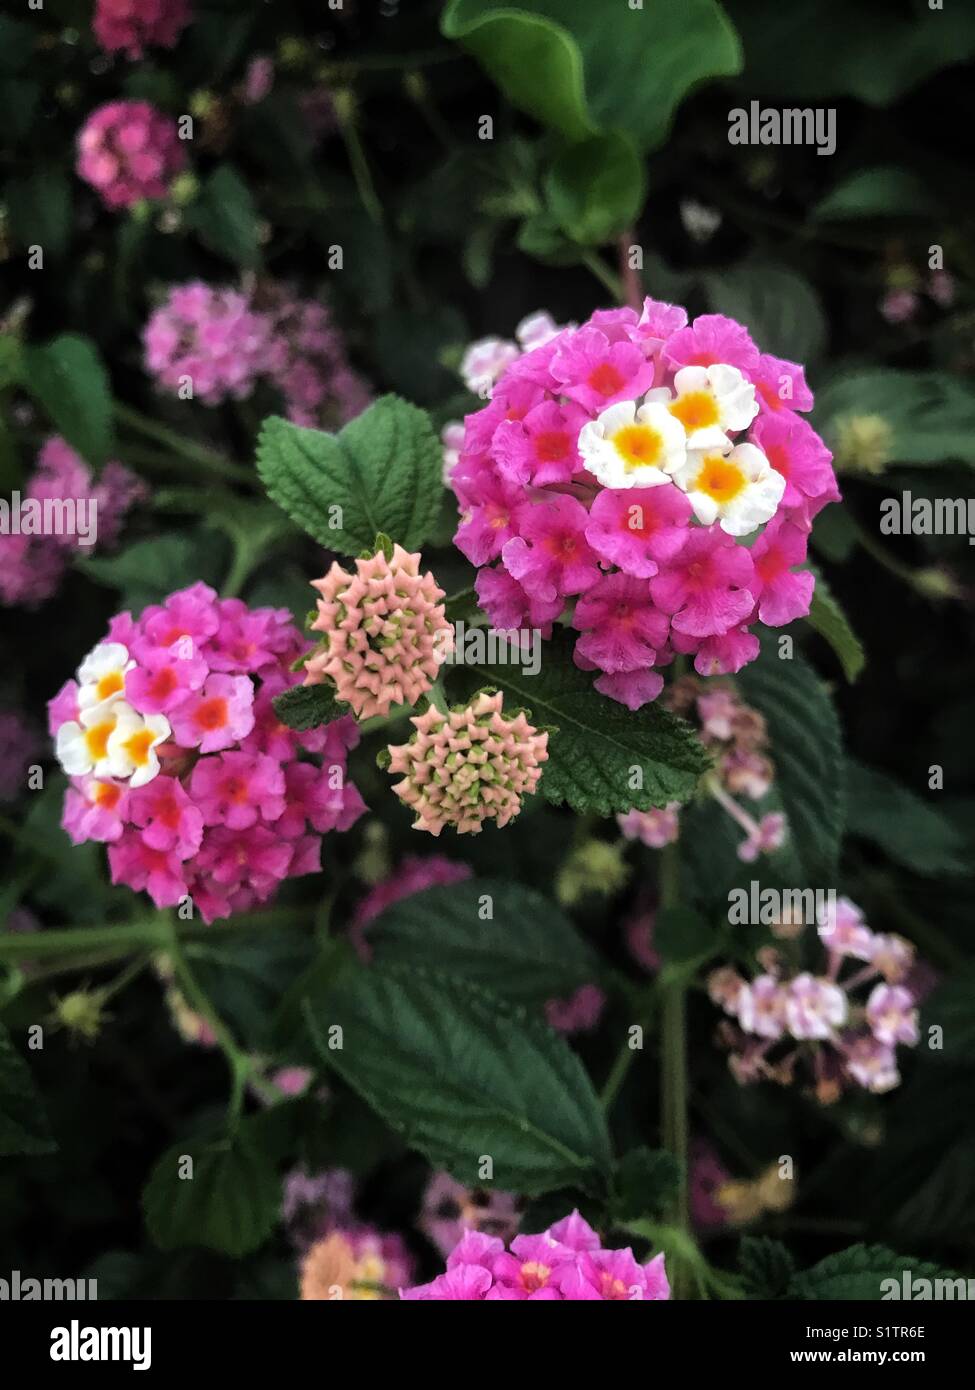 Fleur à Santiago du Chili. Le mélange de couleurs me rappelle la diversité, aussi les différents stades de croissance des fleurs. Banque D'Images